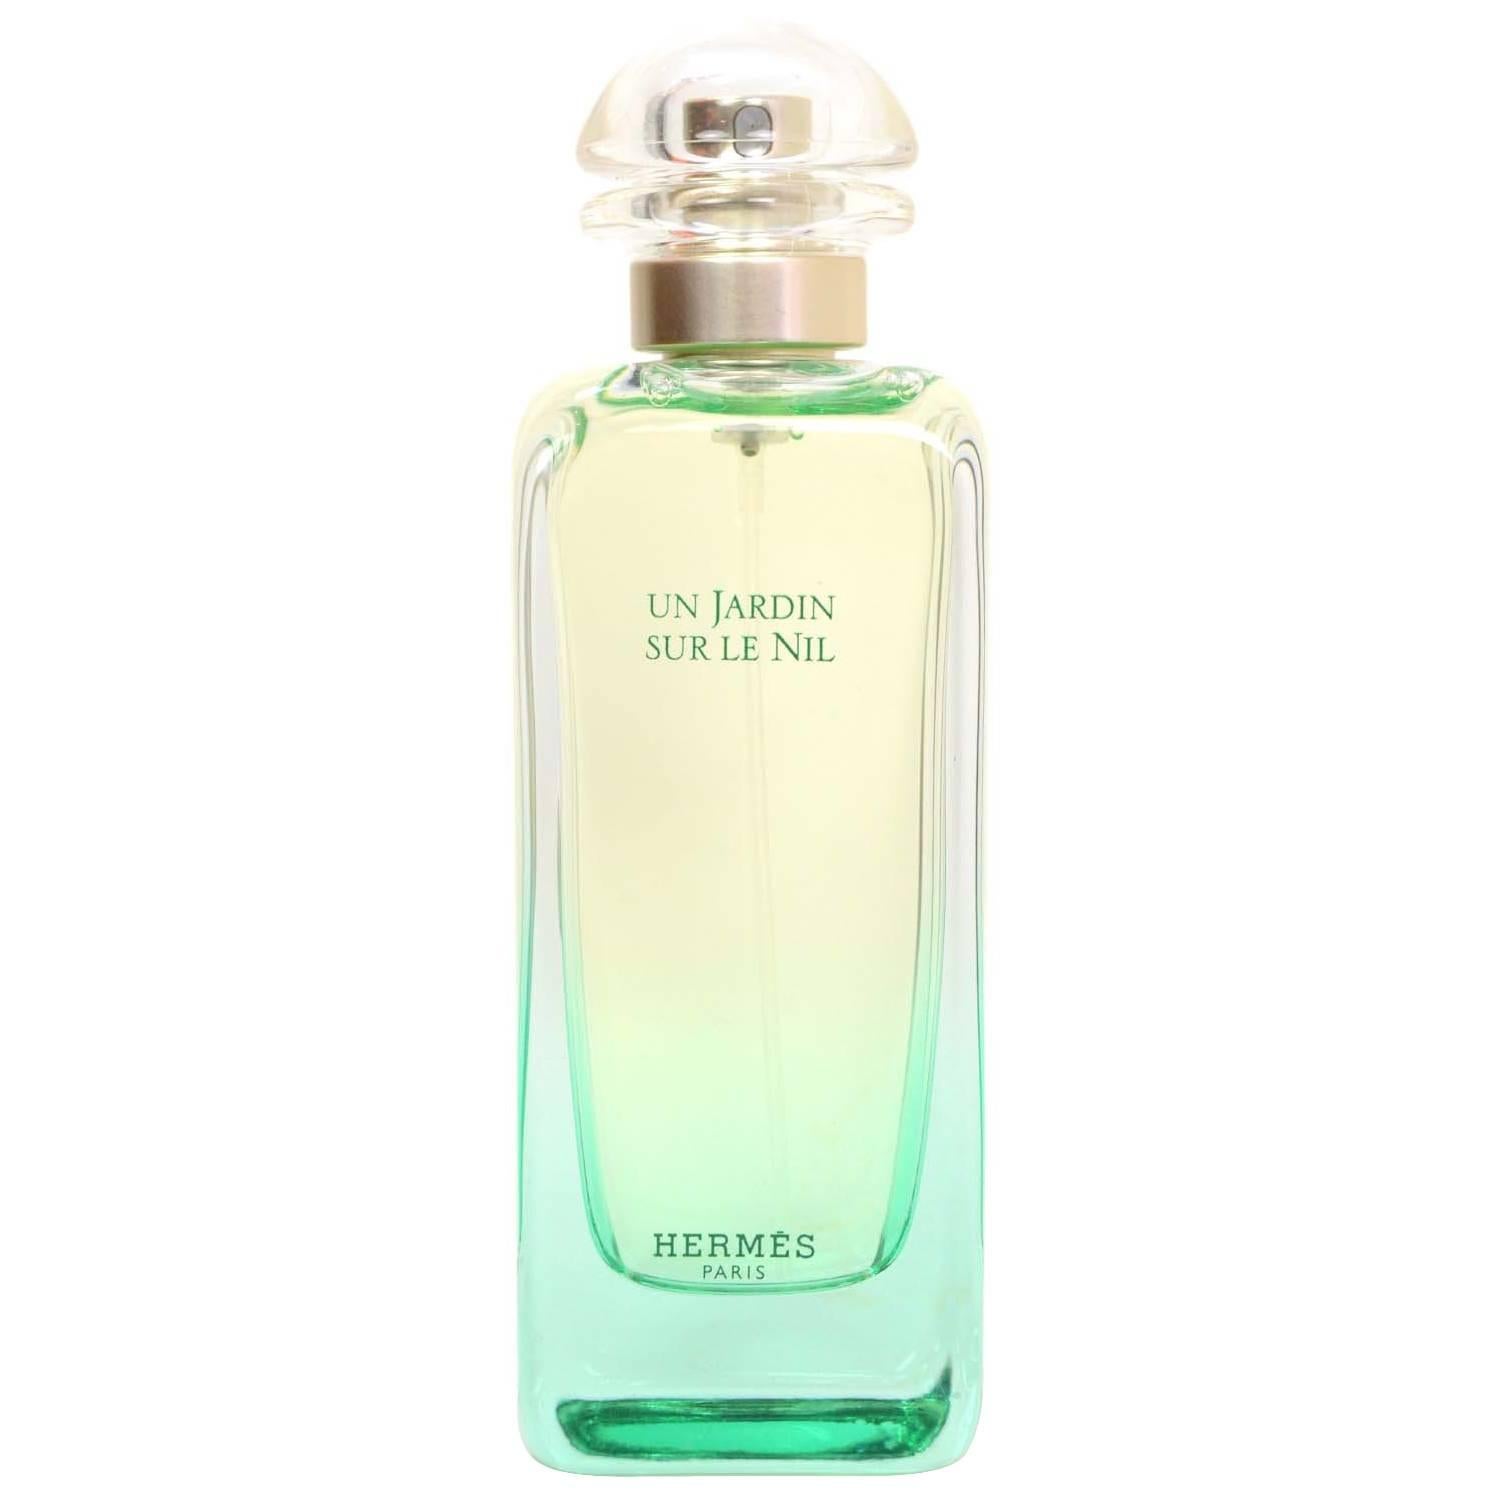 Hermes 'Un Jardin Sur Le Nil' Eu De Toilette Perfume